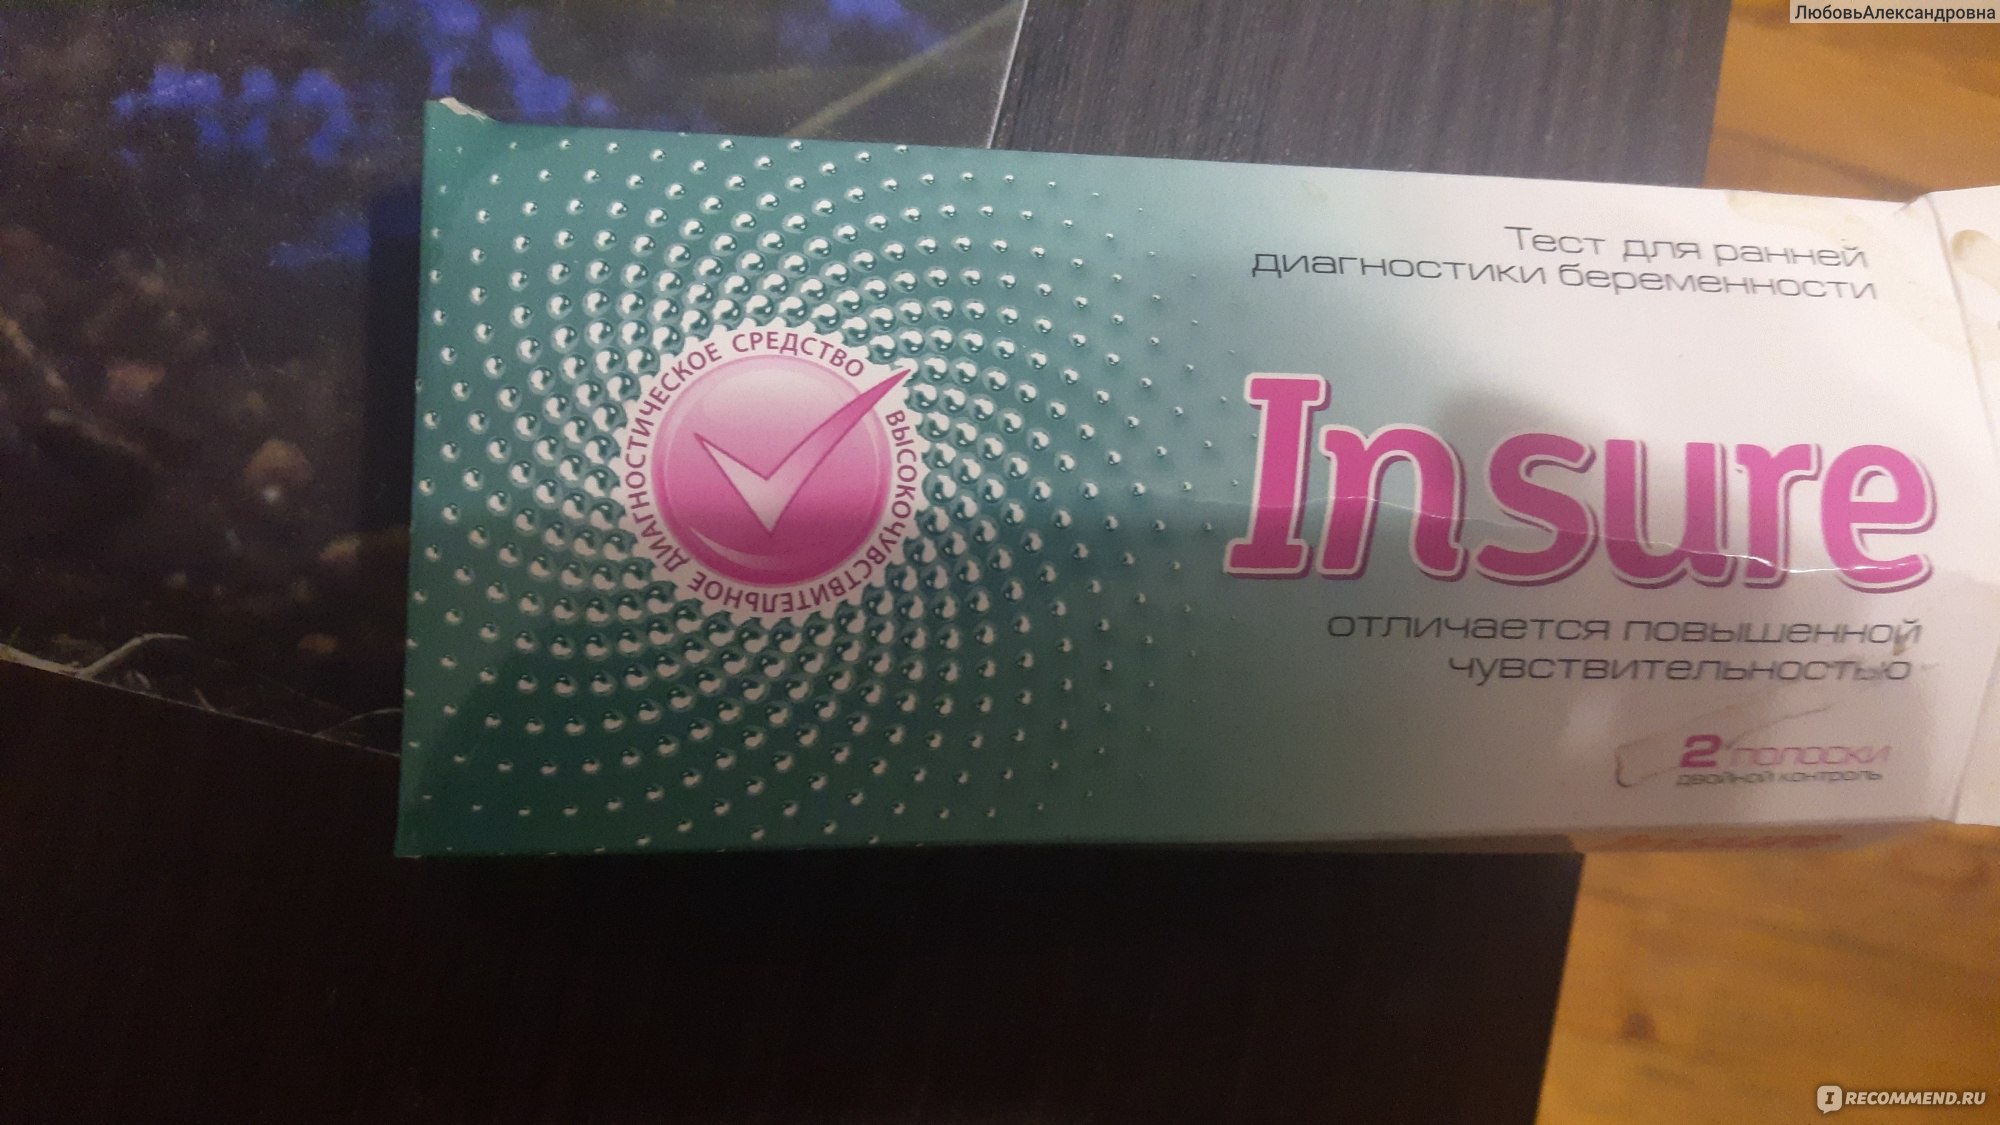 Тест Инсуре (Insure) кассетный для определения беременности (N1) Клевер ООО - Россия